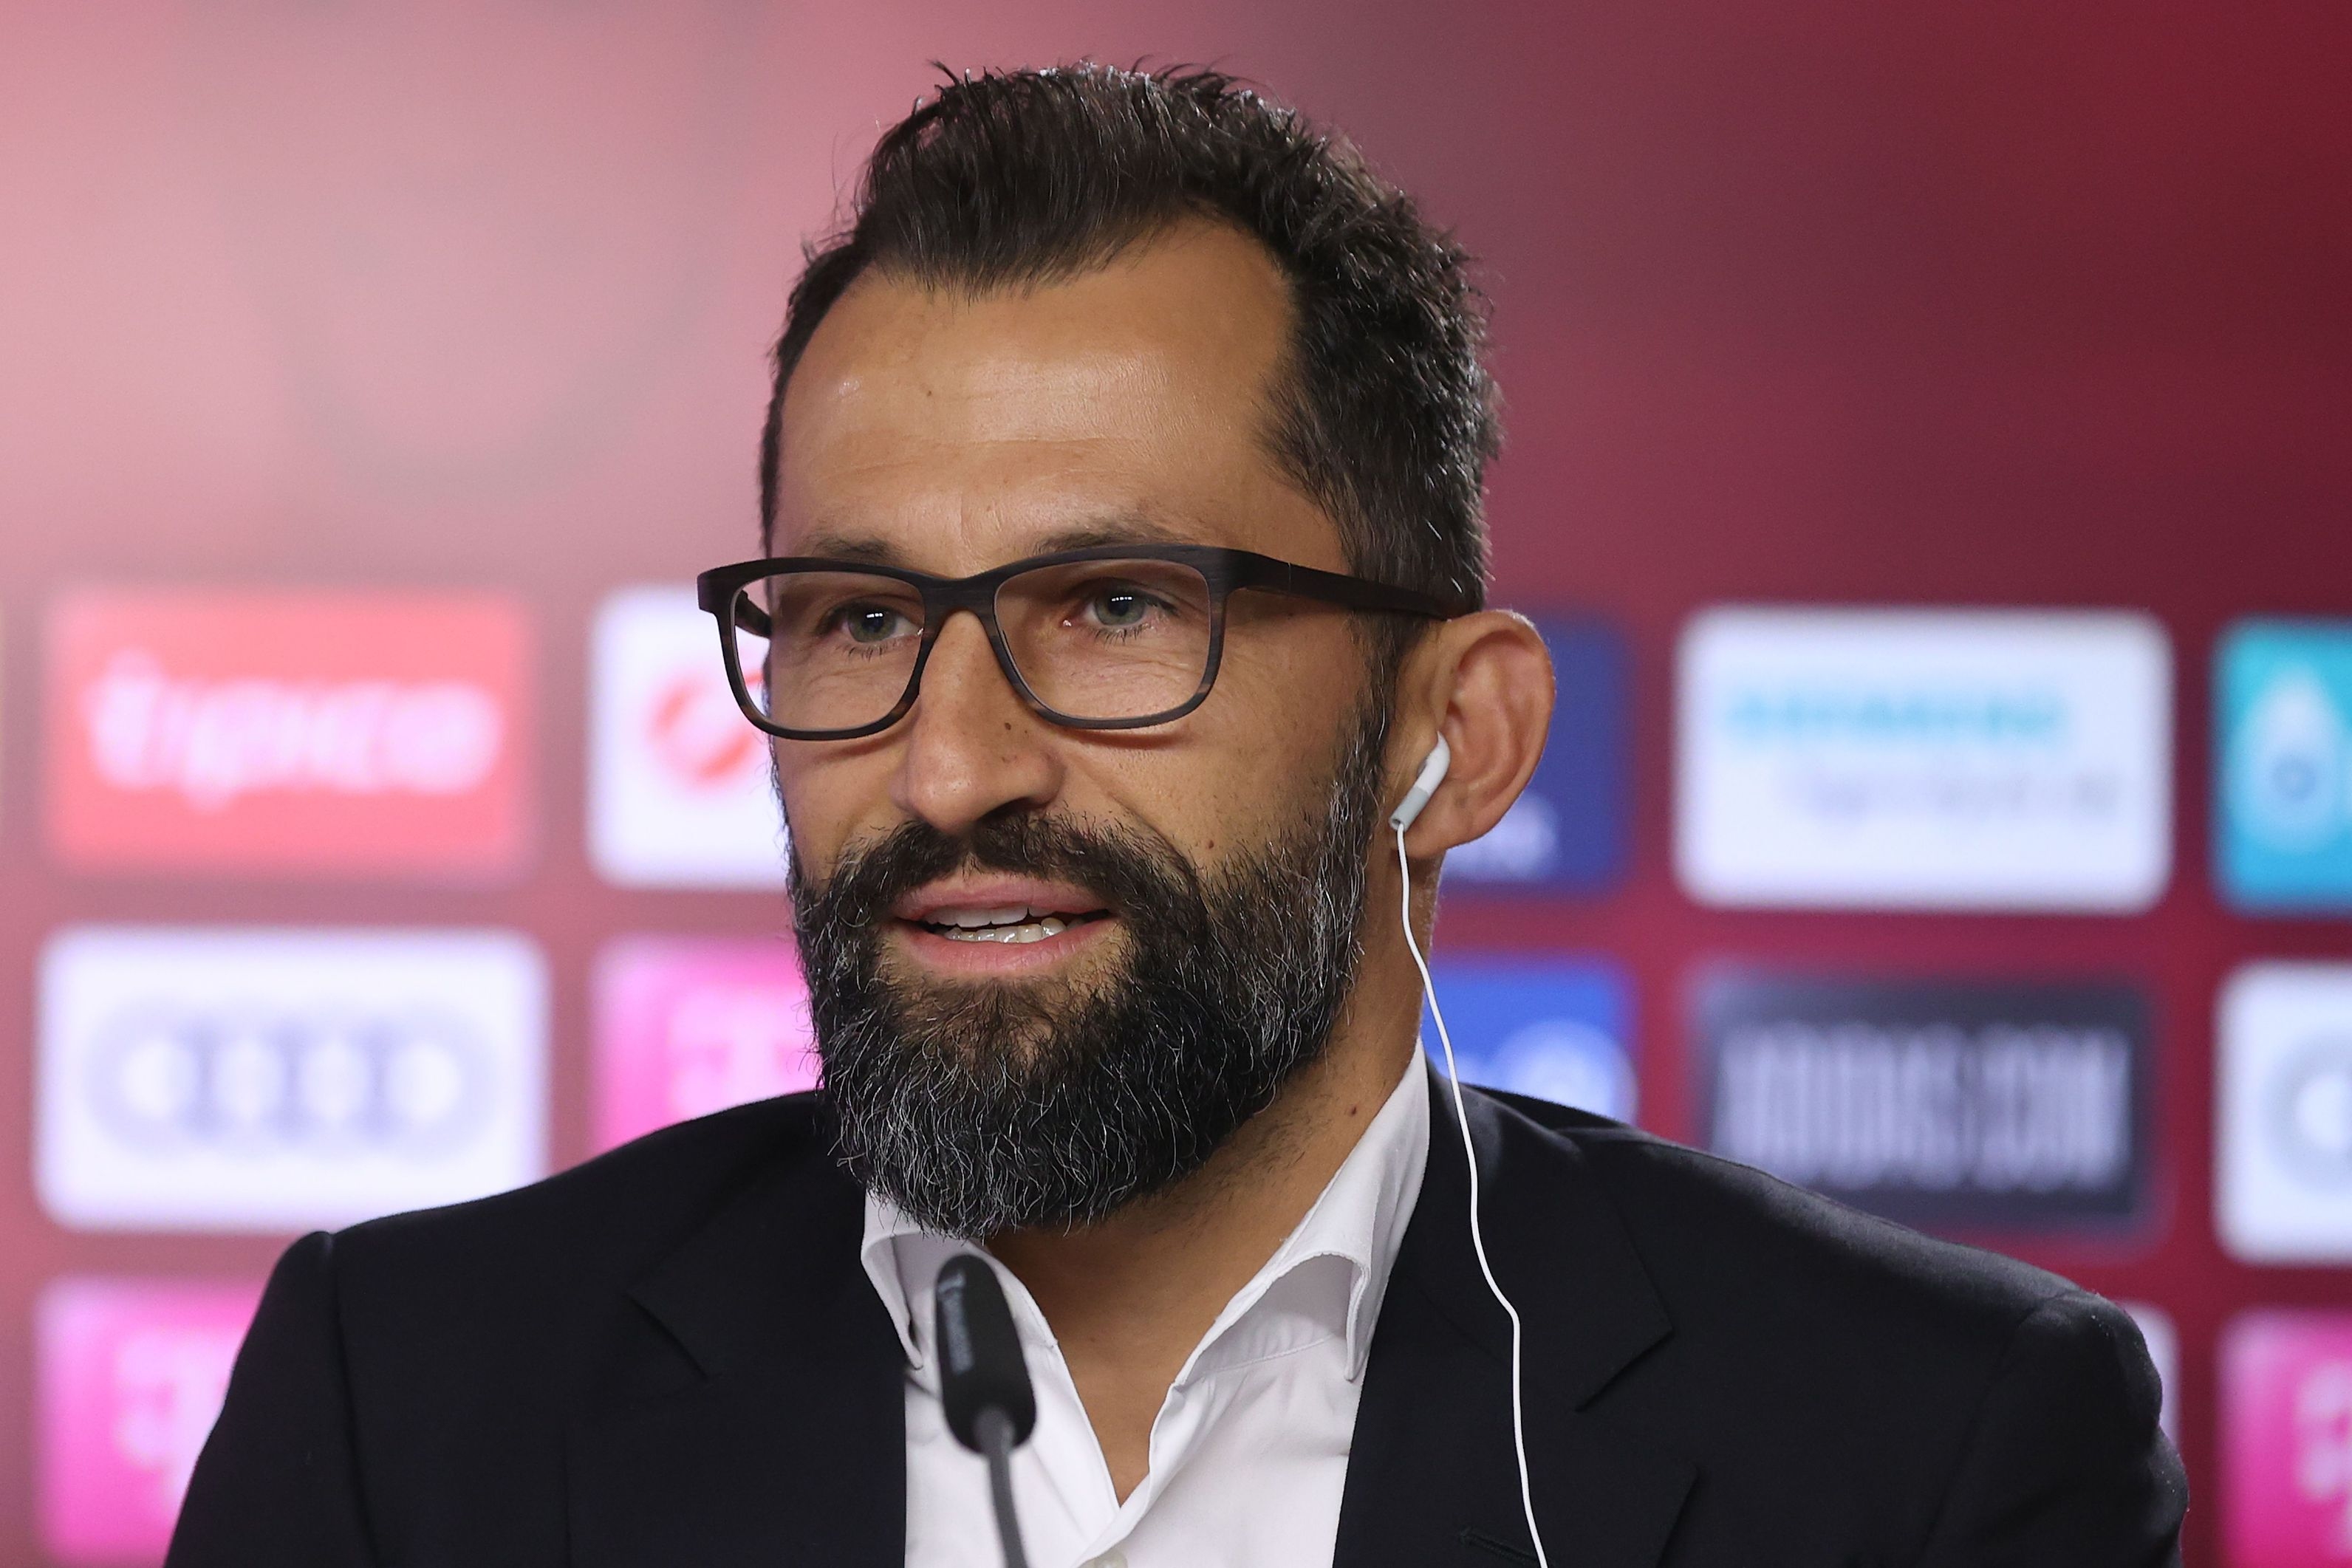 Спортният директор на Хасан Салихамиджич коментира проваления трансфер на Сержиньо